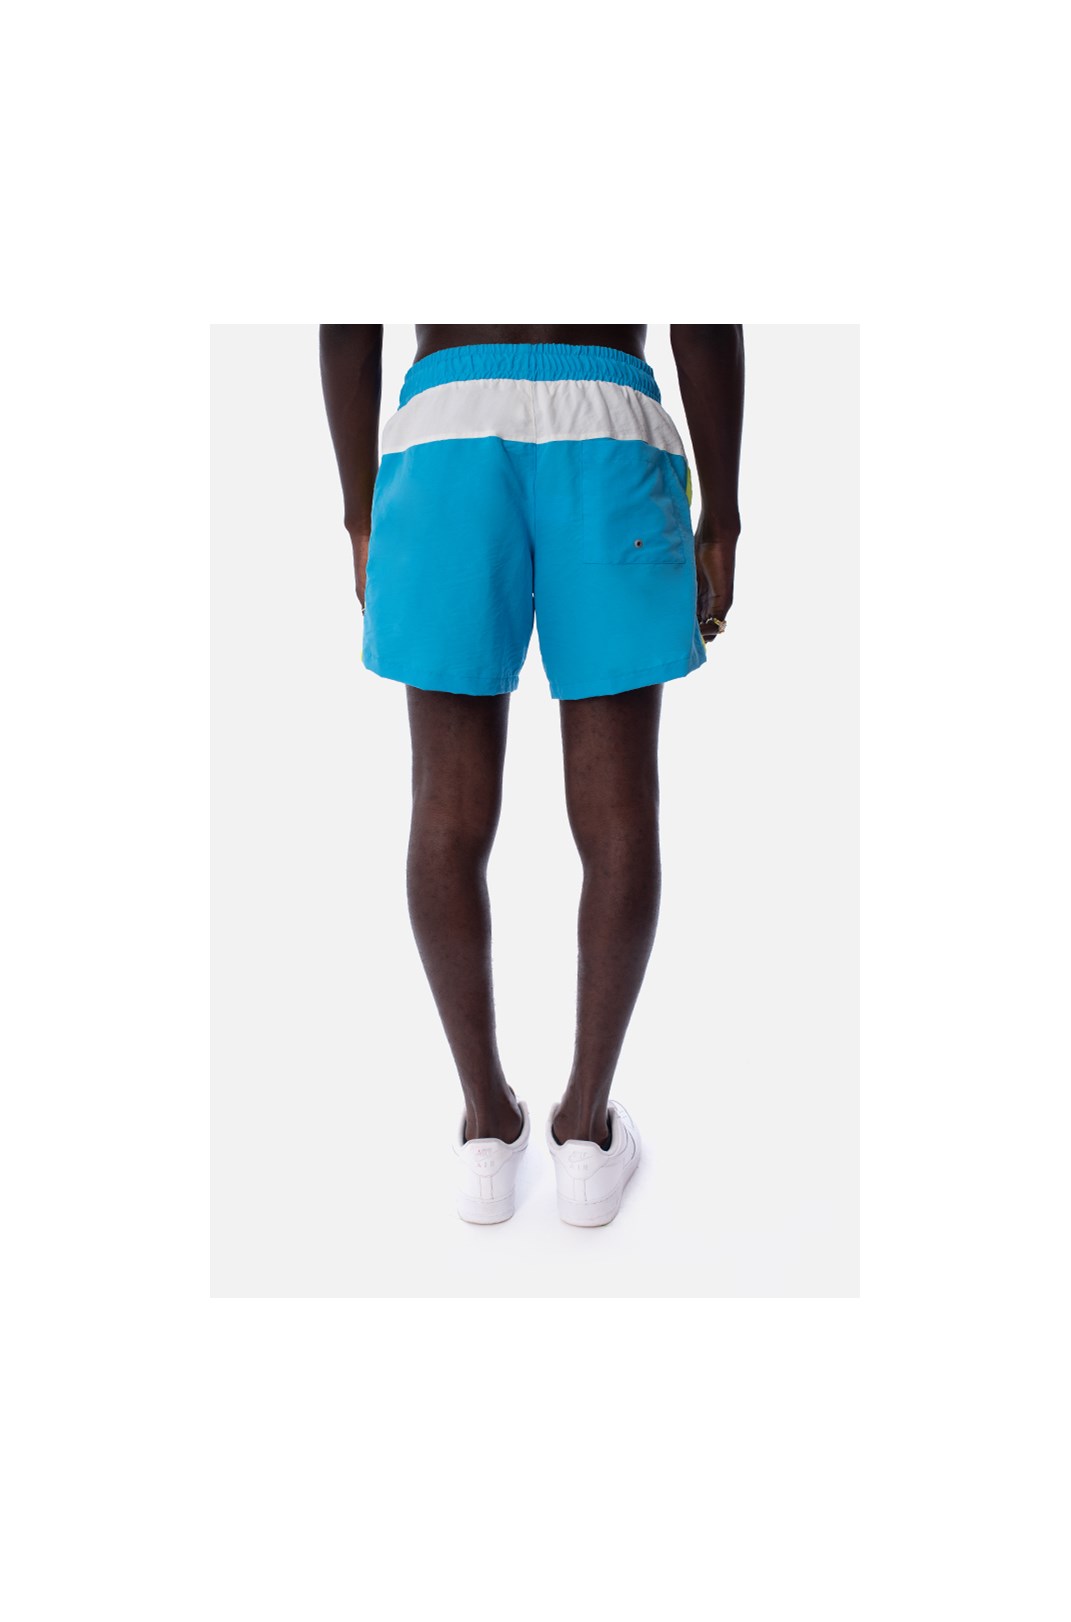 Shorts Approve Retropia Azul e Off White